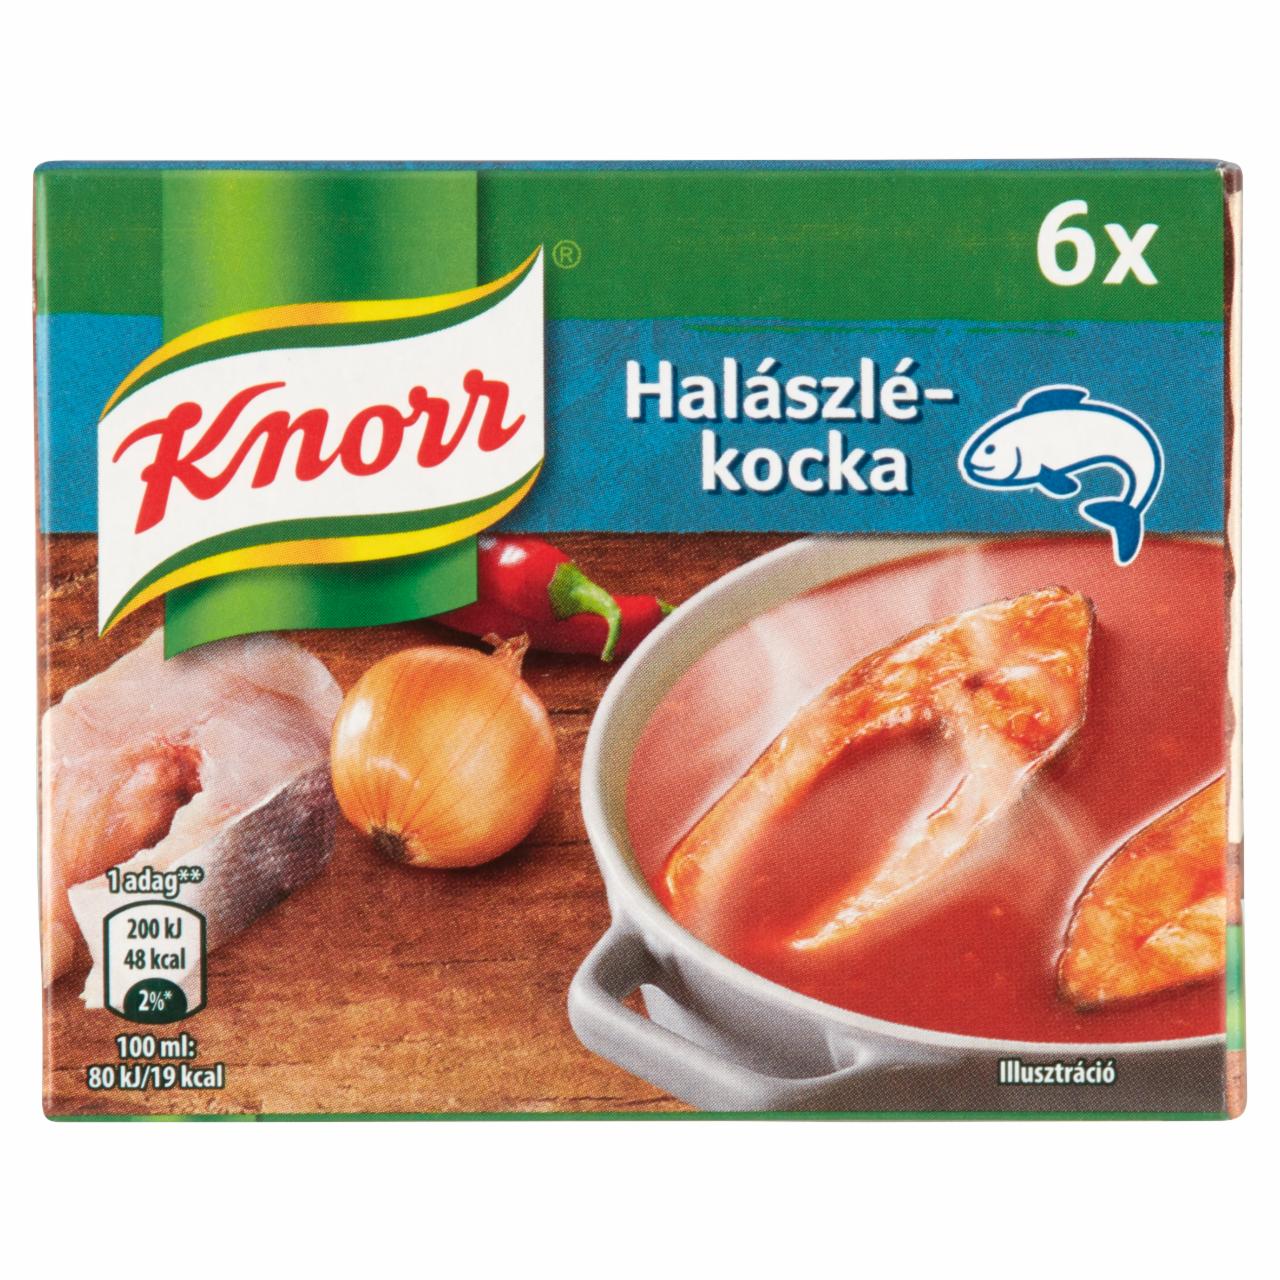 Képek - Knorr halászlékocka 6 x 10 g (60 g)